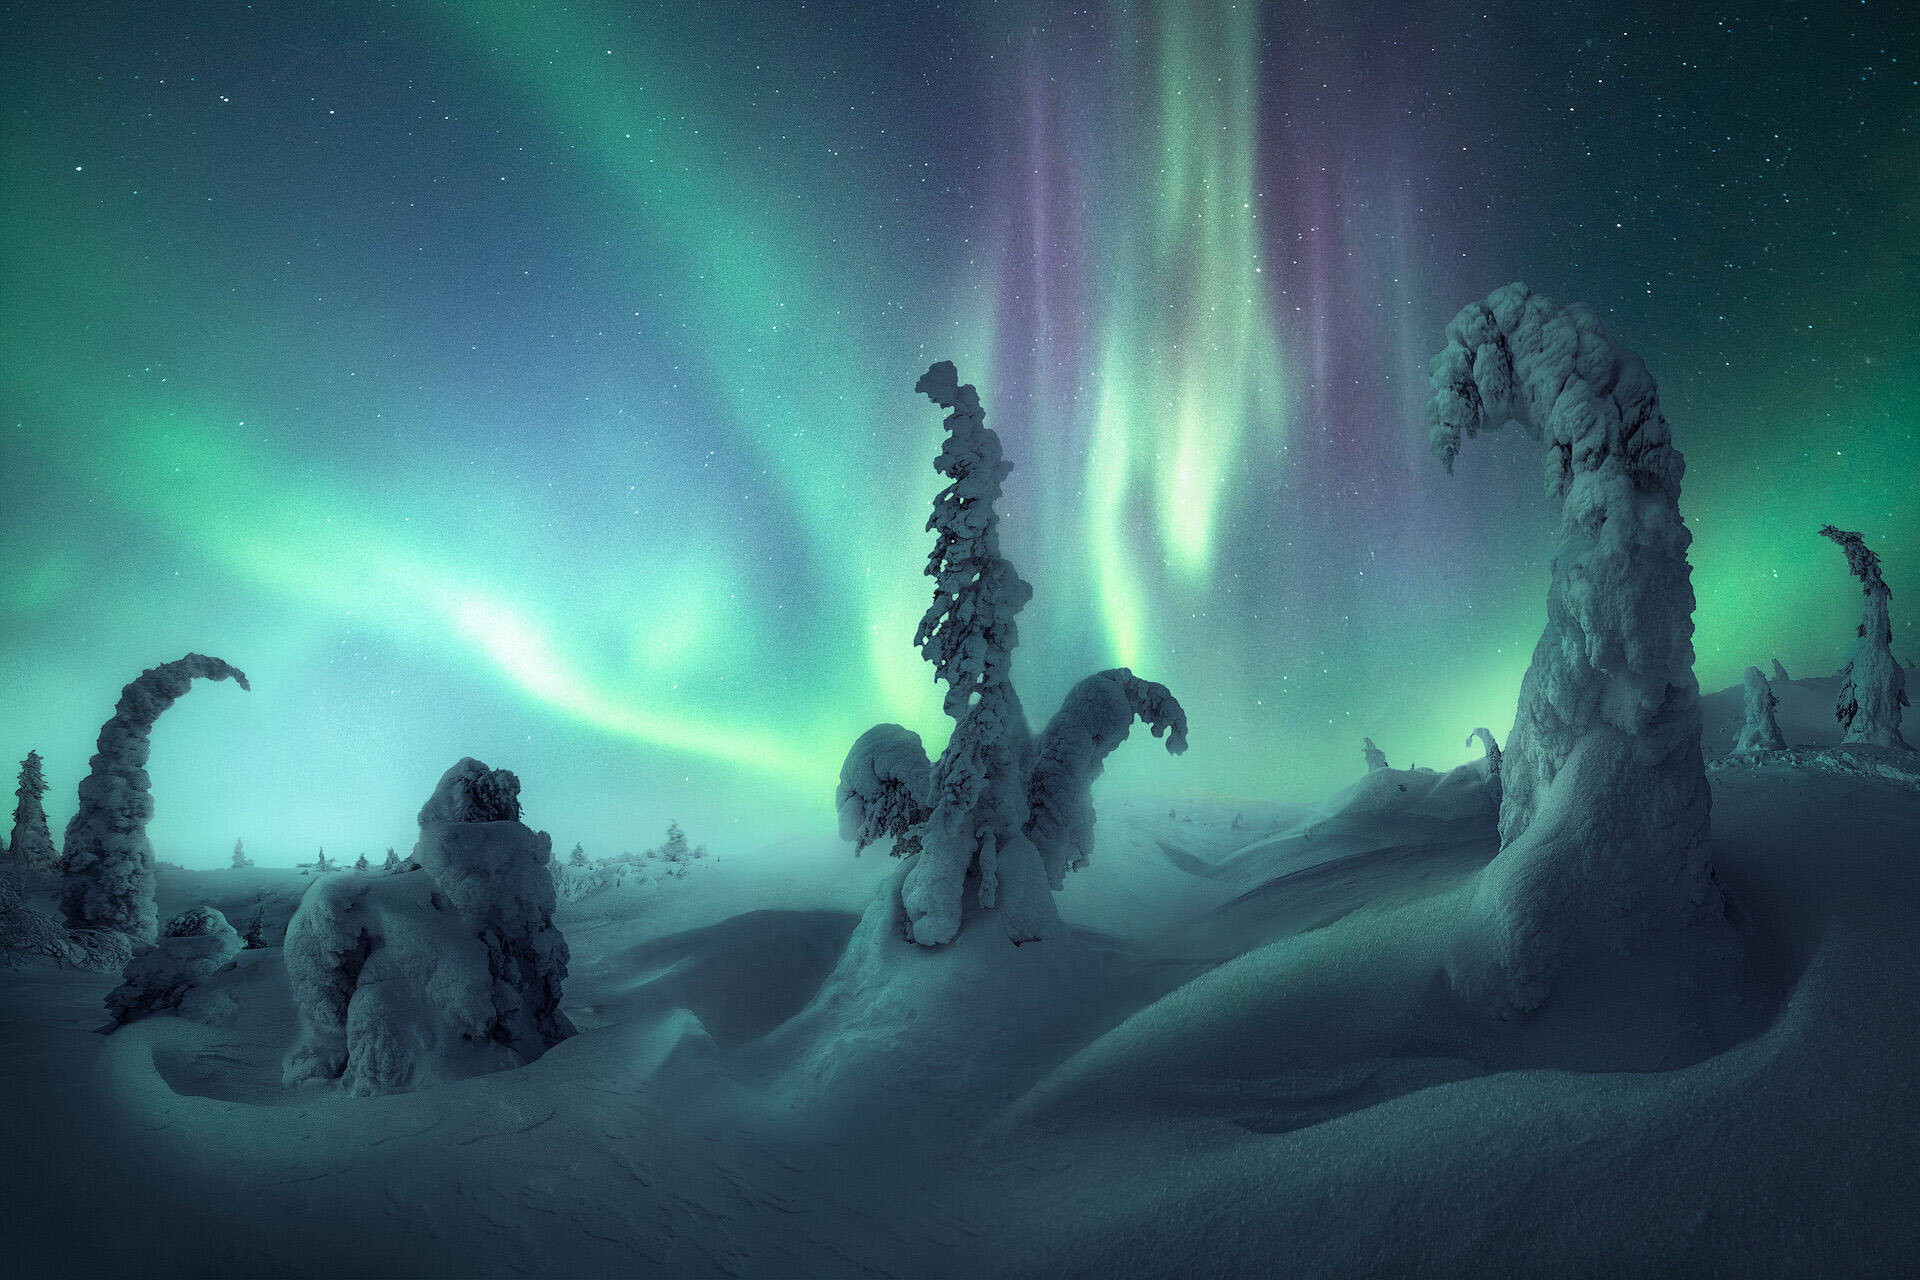 Cielo nocturno completamente cubierto en una brillante Aurora Boreal sobre un bosque congelado